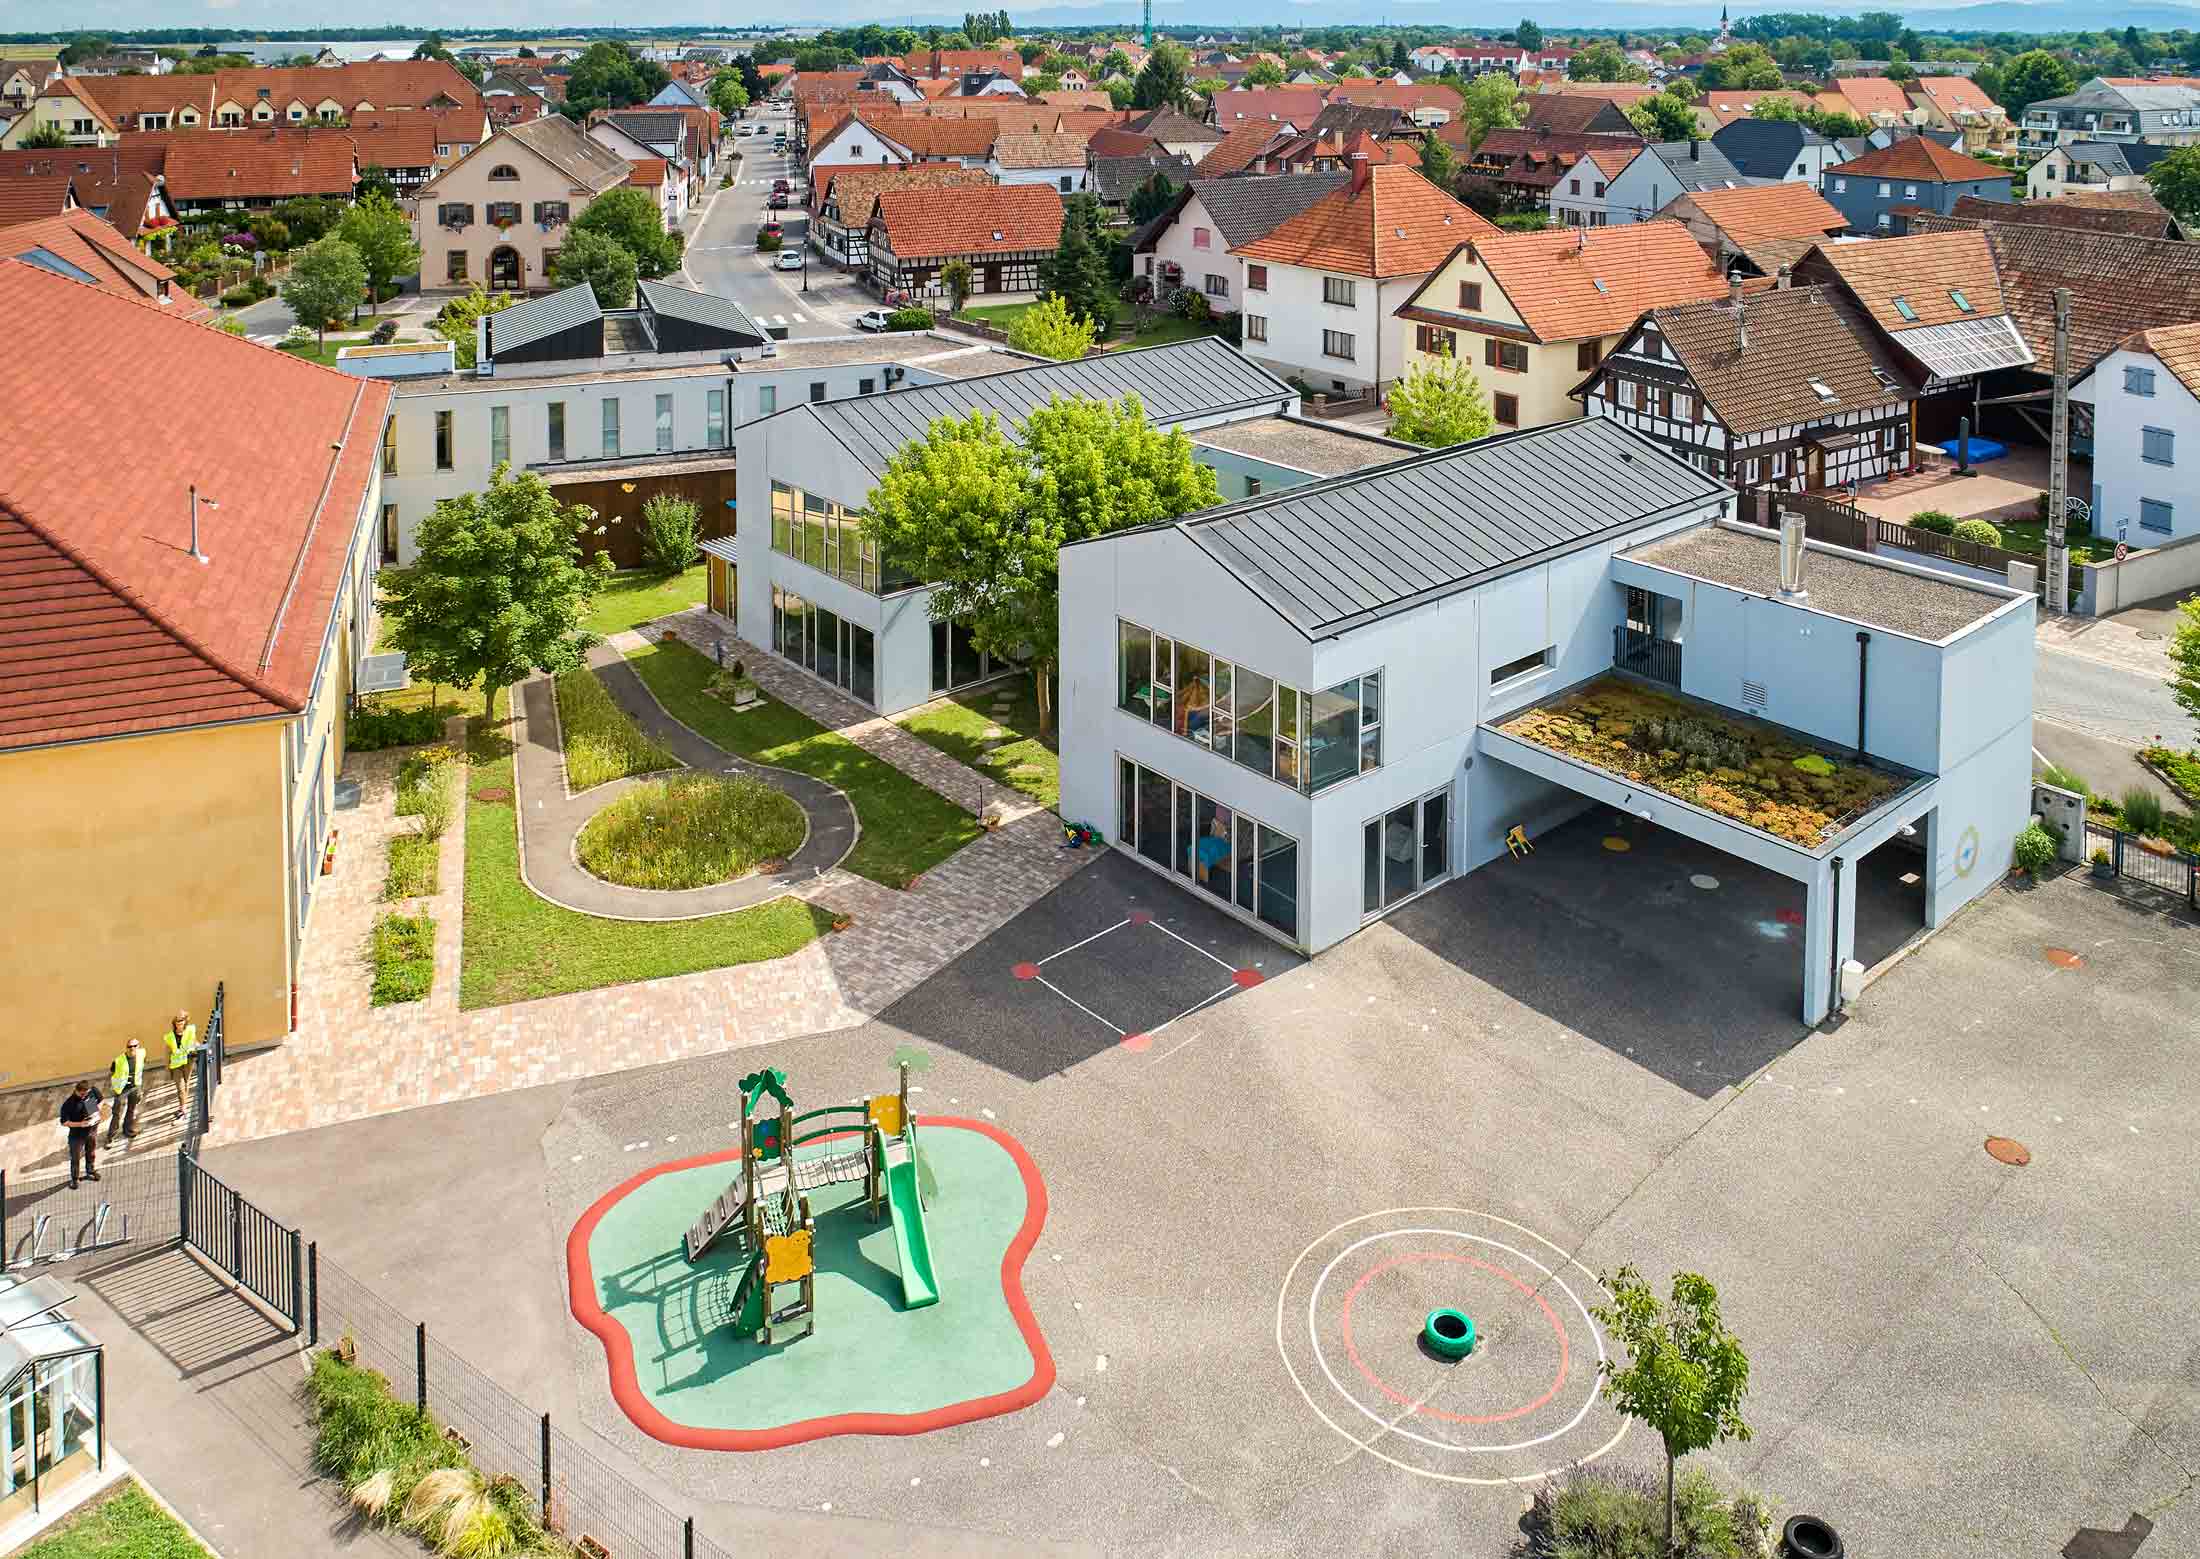 Prise de vue d'architecture et d'urbanisme réalisée par drone de la ville de Lipsheim